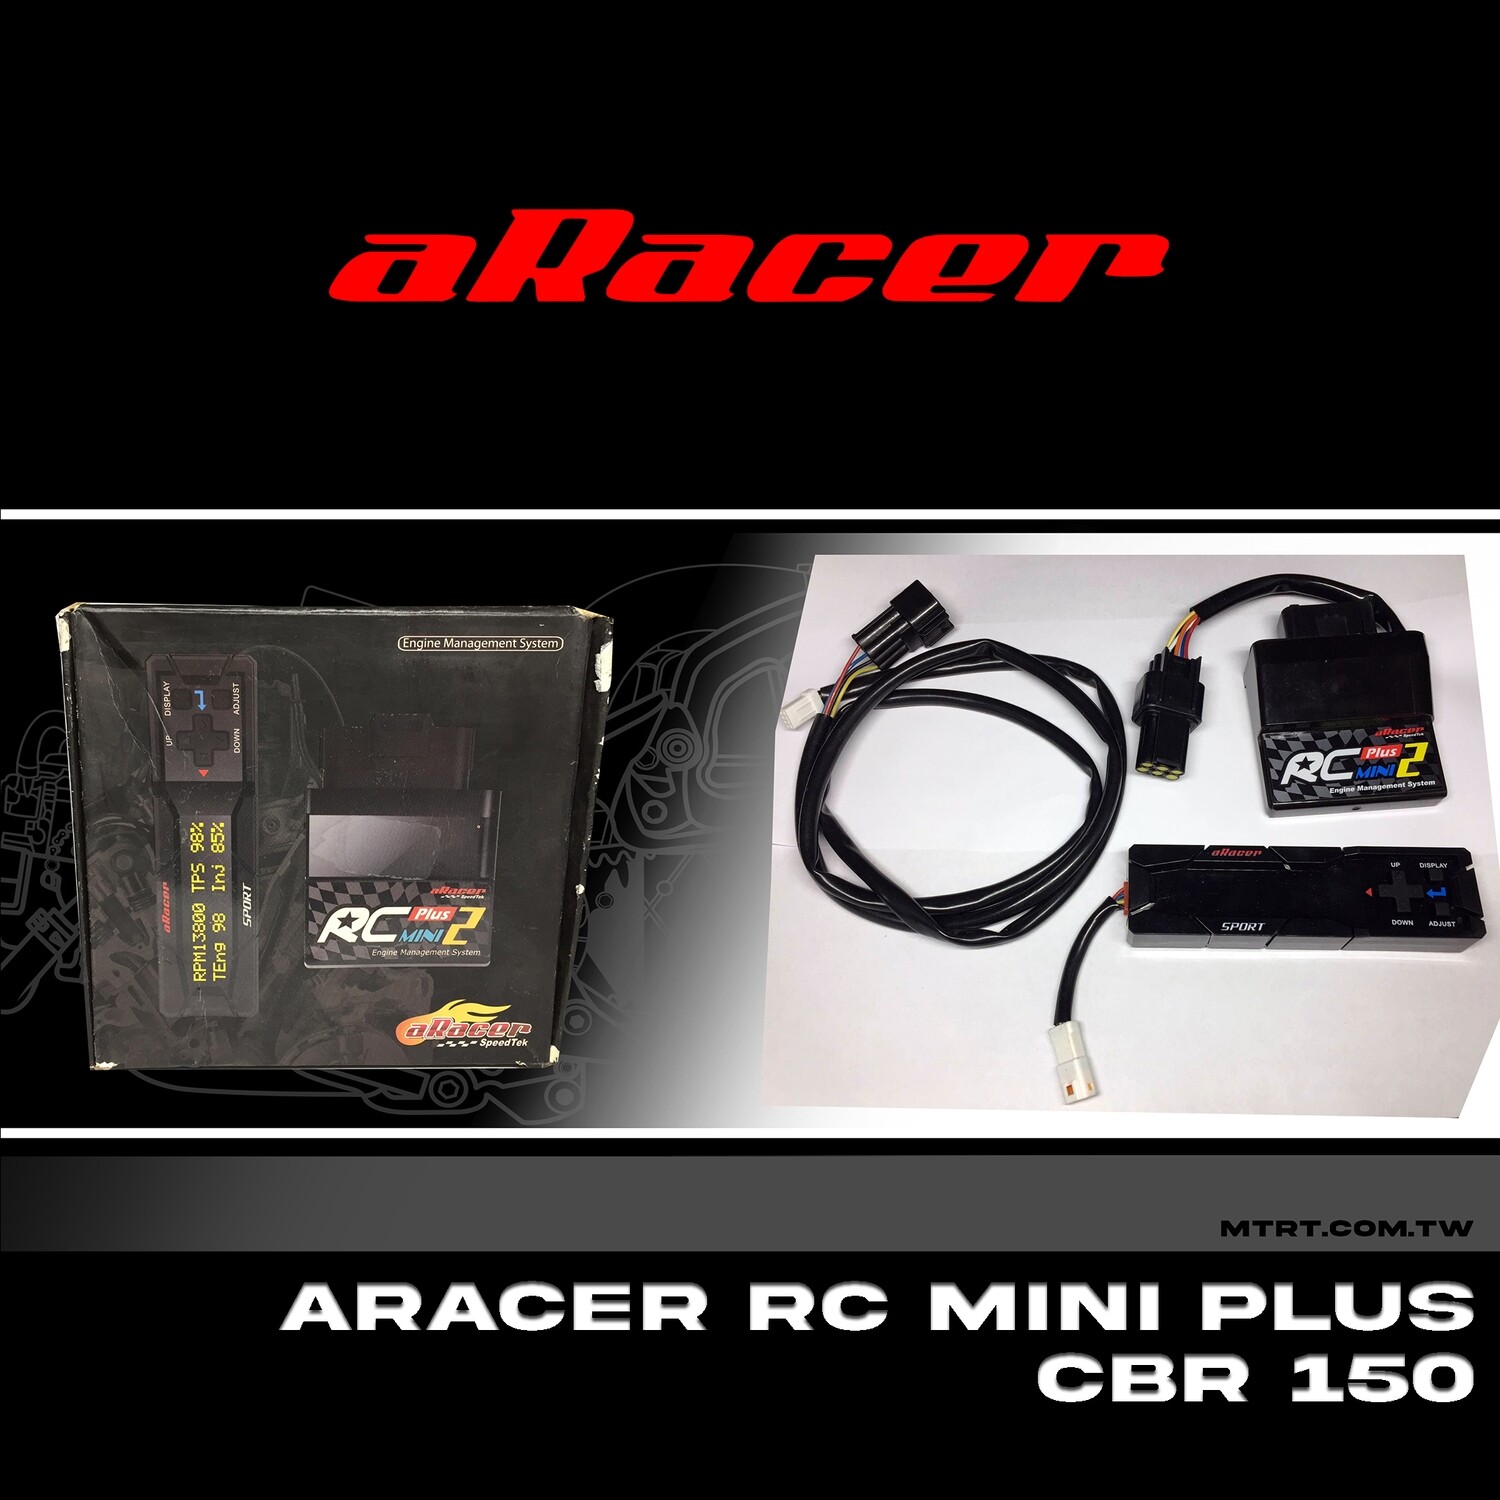 Aracer RC Mini Plus CBR150